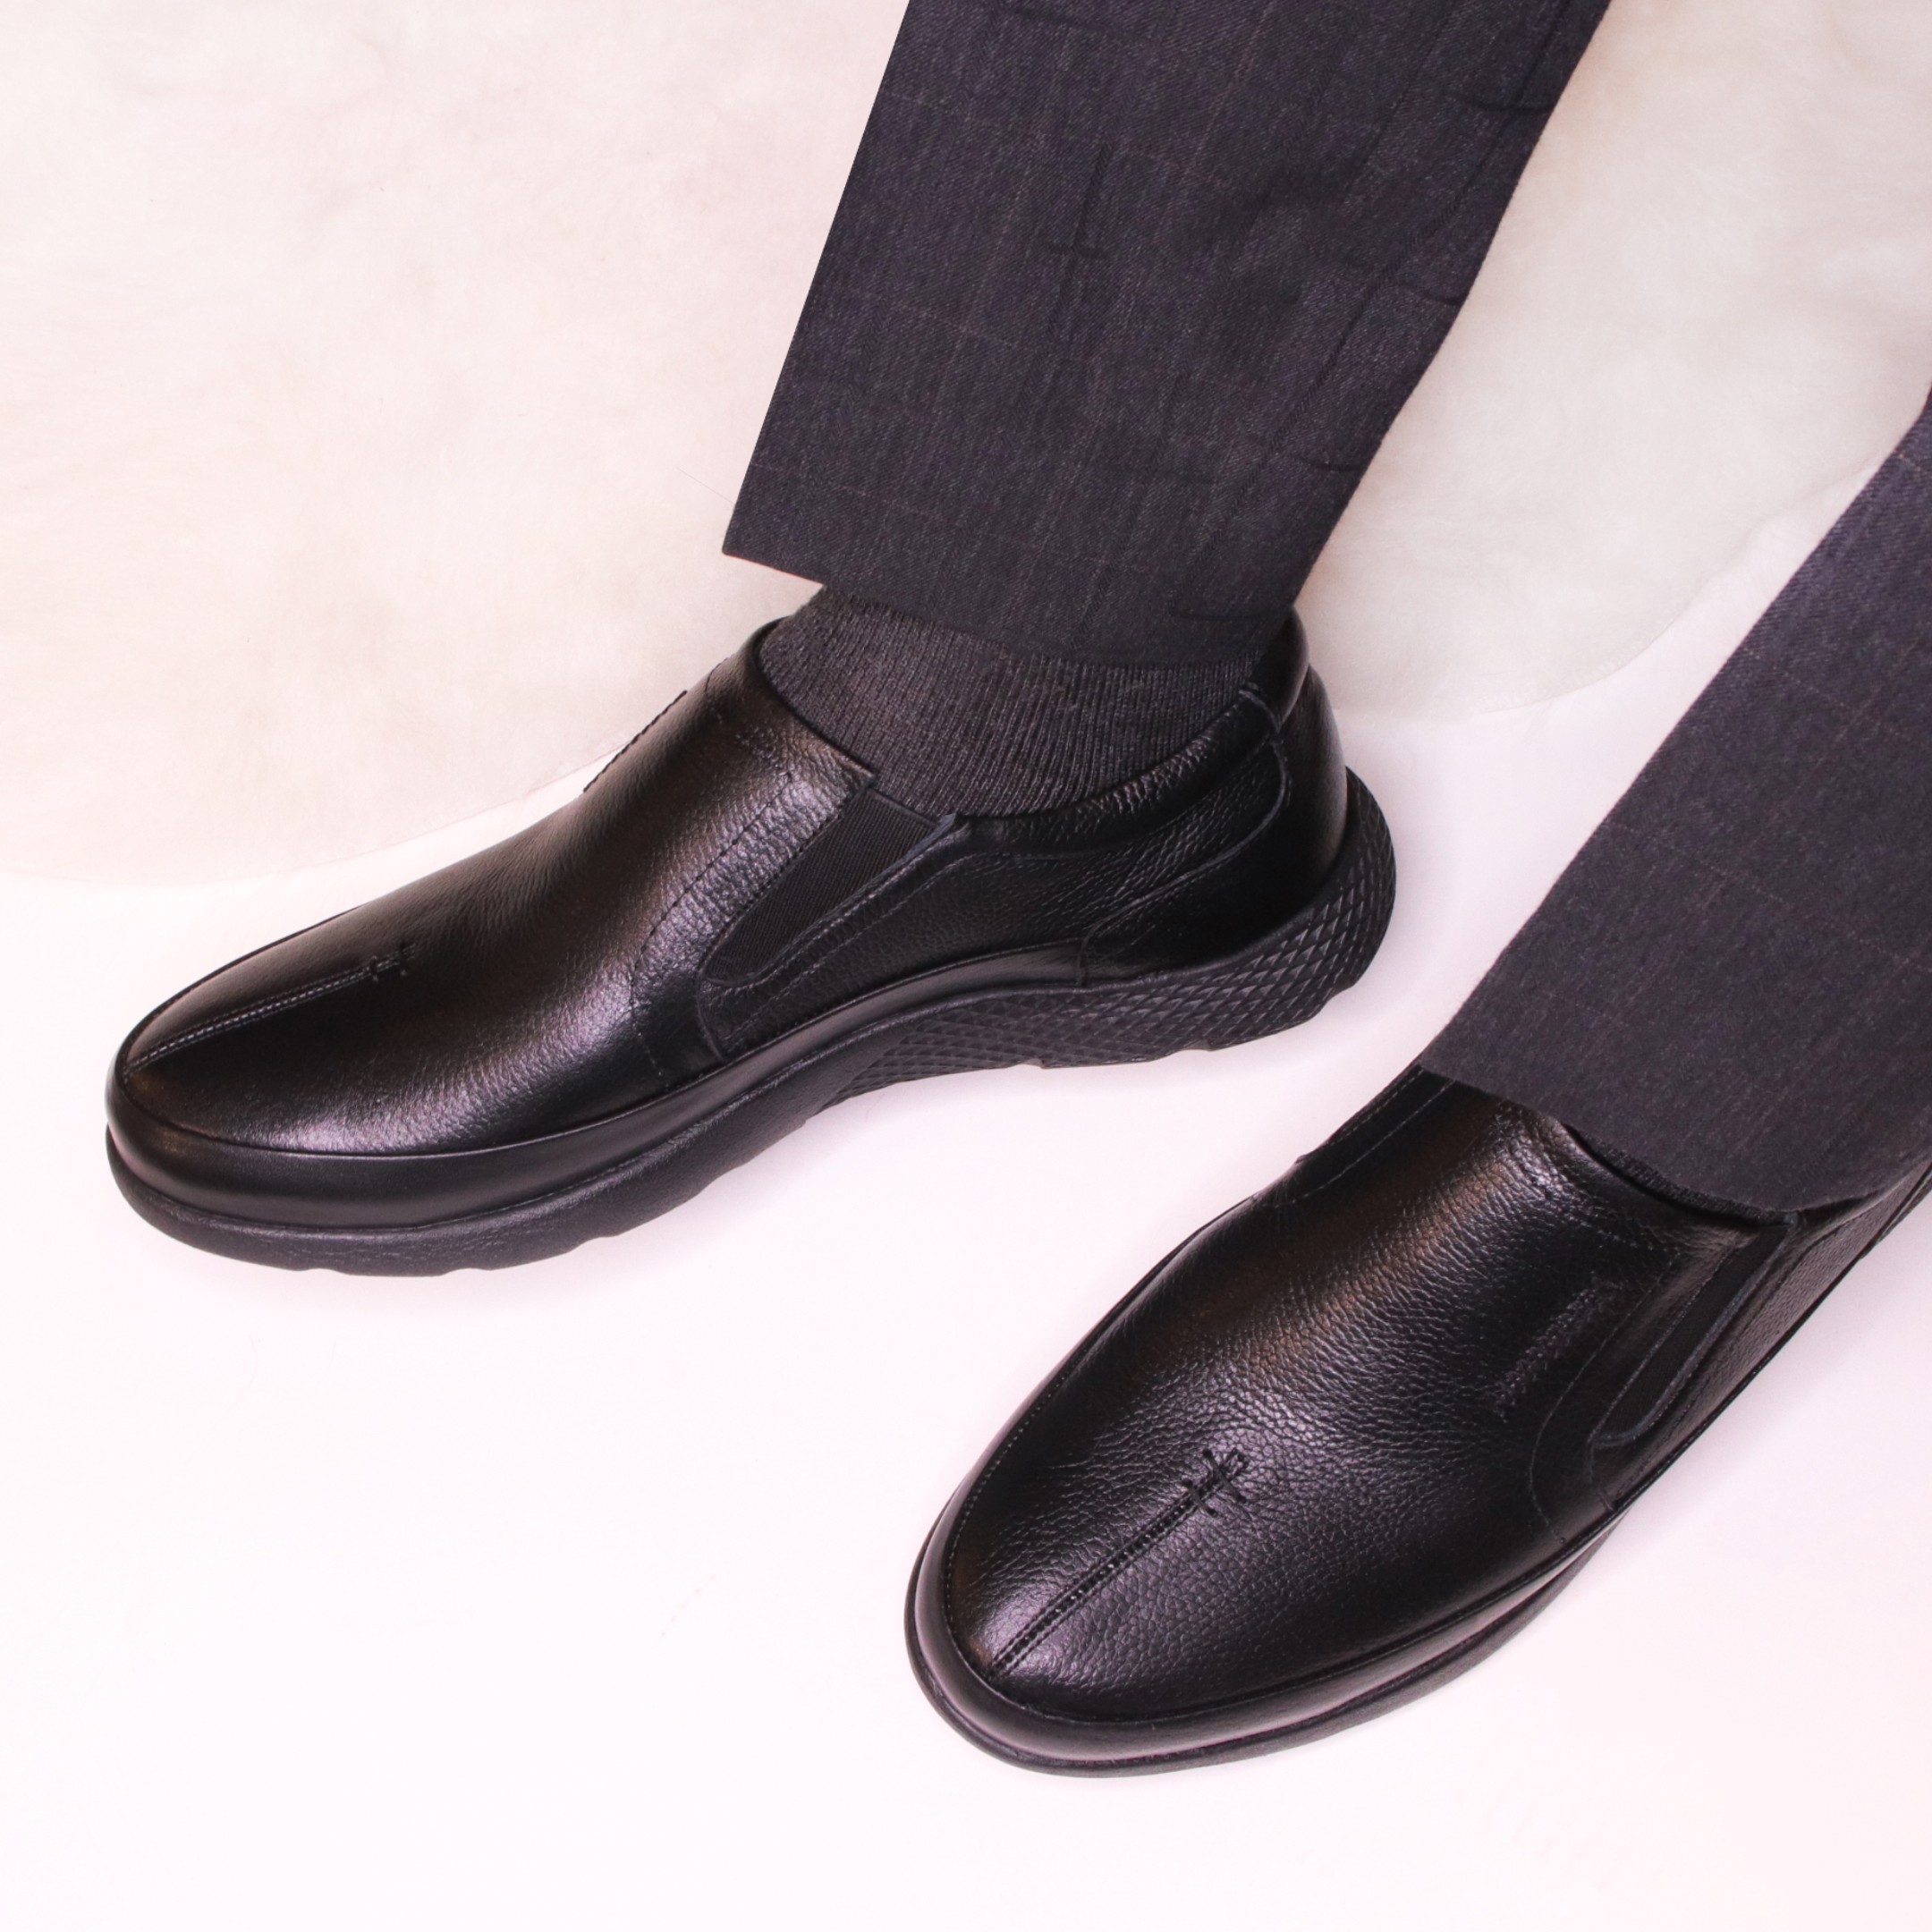 خرید آنلاین کفش چرمی مردانه توگو مدل شیکاگو کد 01